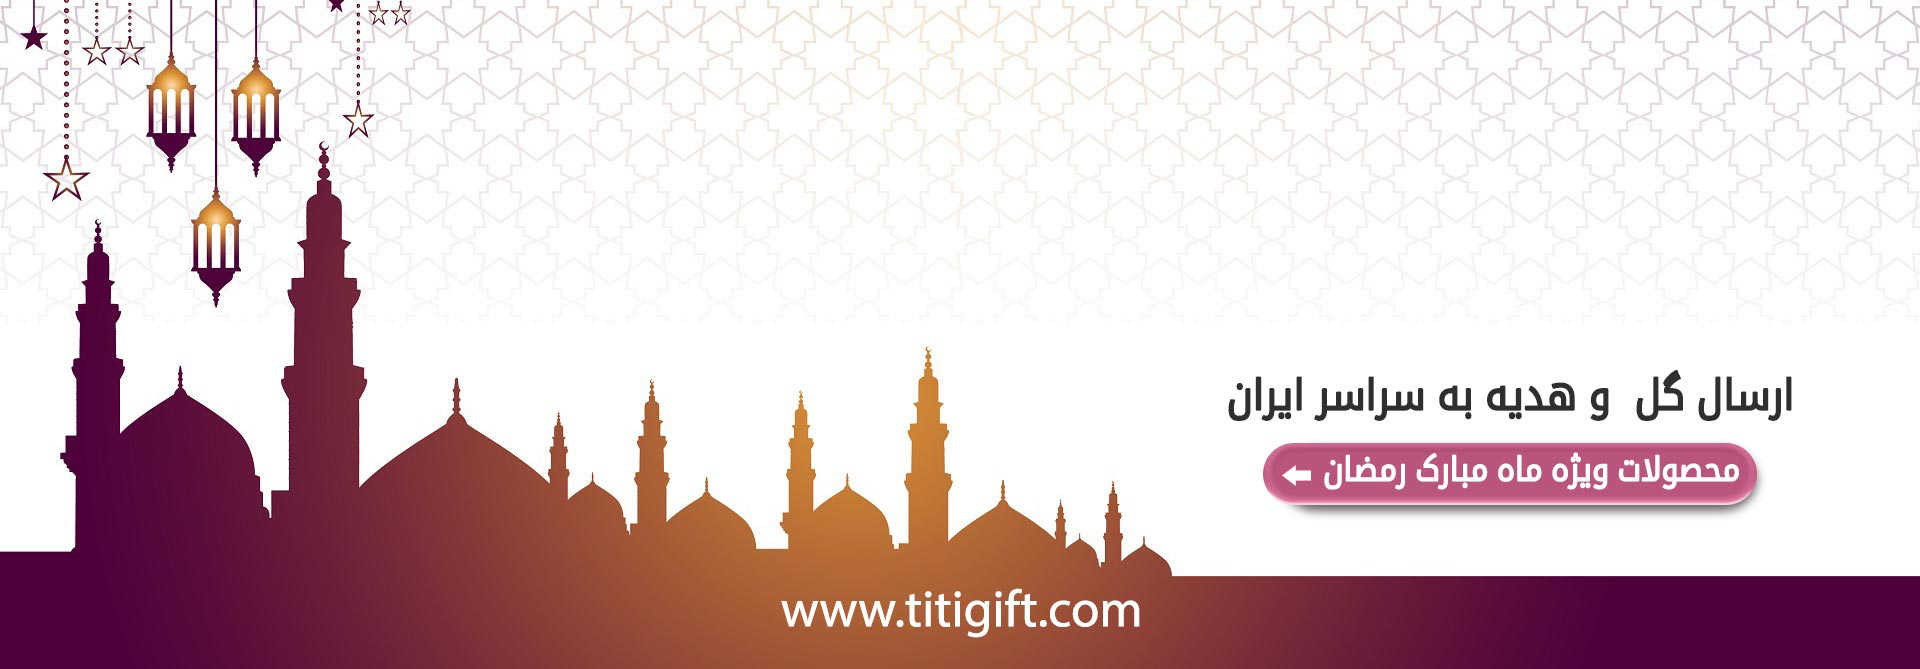 خرید آنلاین ویژه ماه رمضان